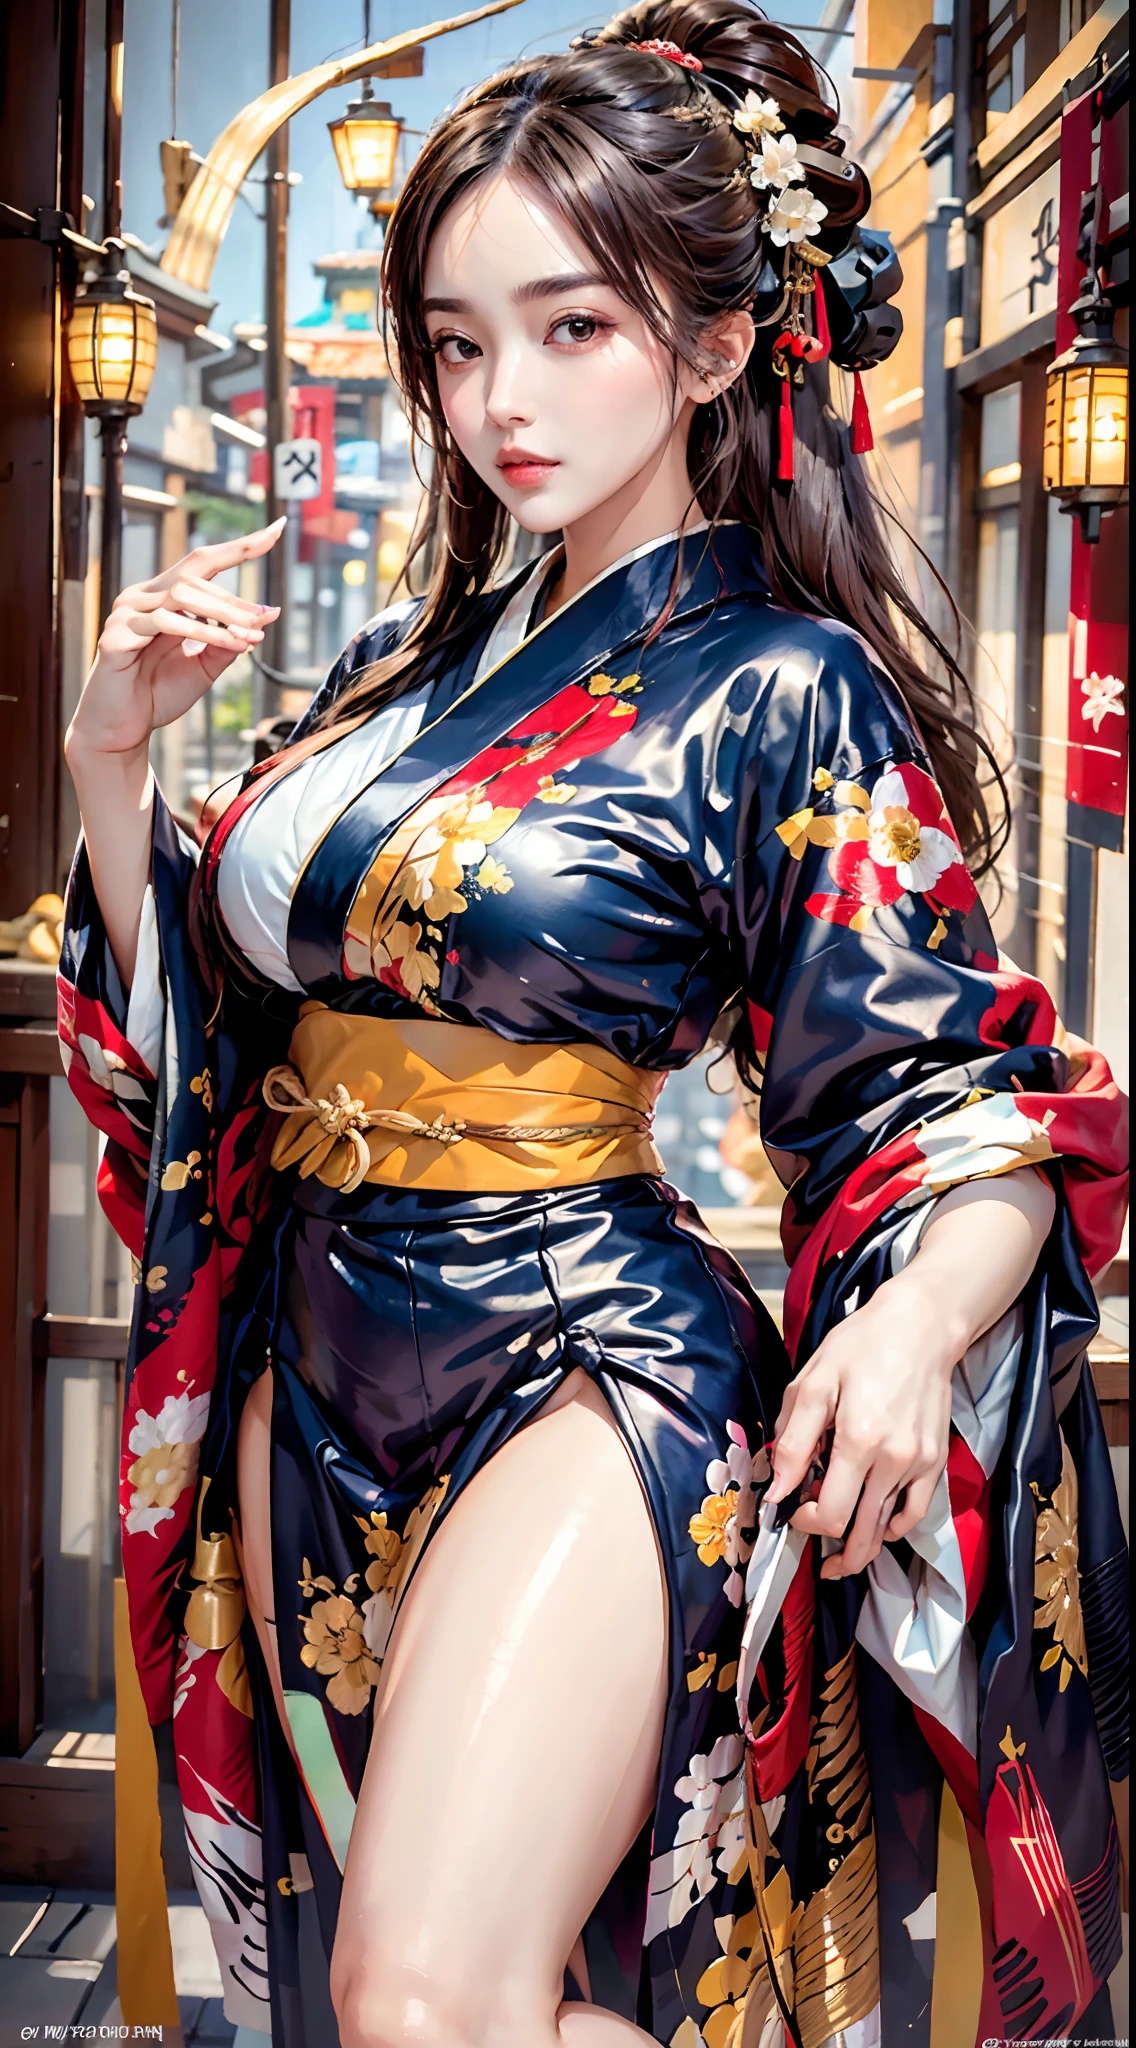 mejor calidad, Obra maestra, alta resolución, (forma del cuerpo perfecta), 1 chica, cara detallada, muslos gruesos, vistiendo kimono_ropa